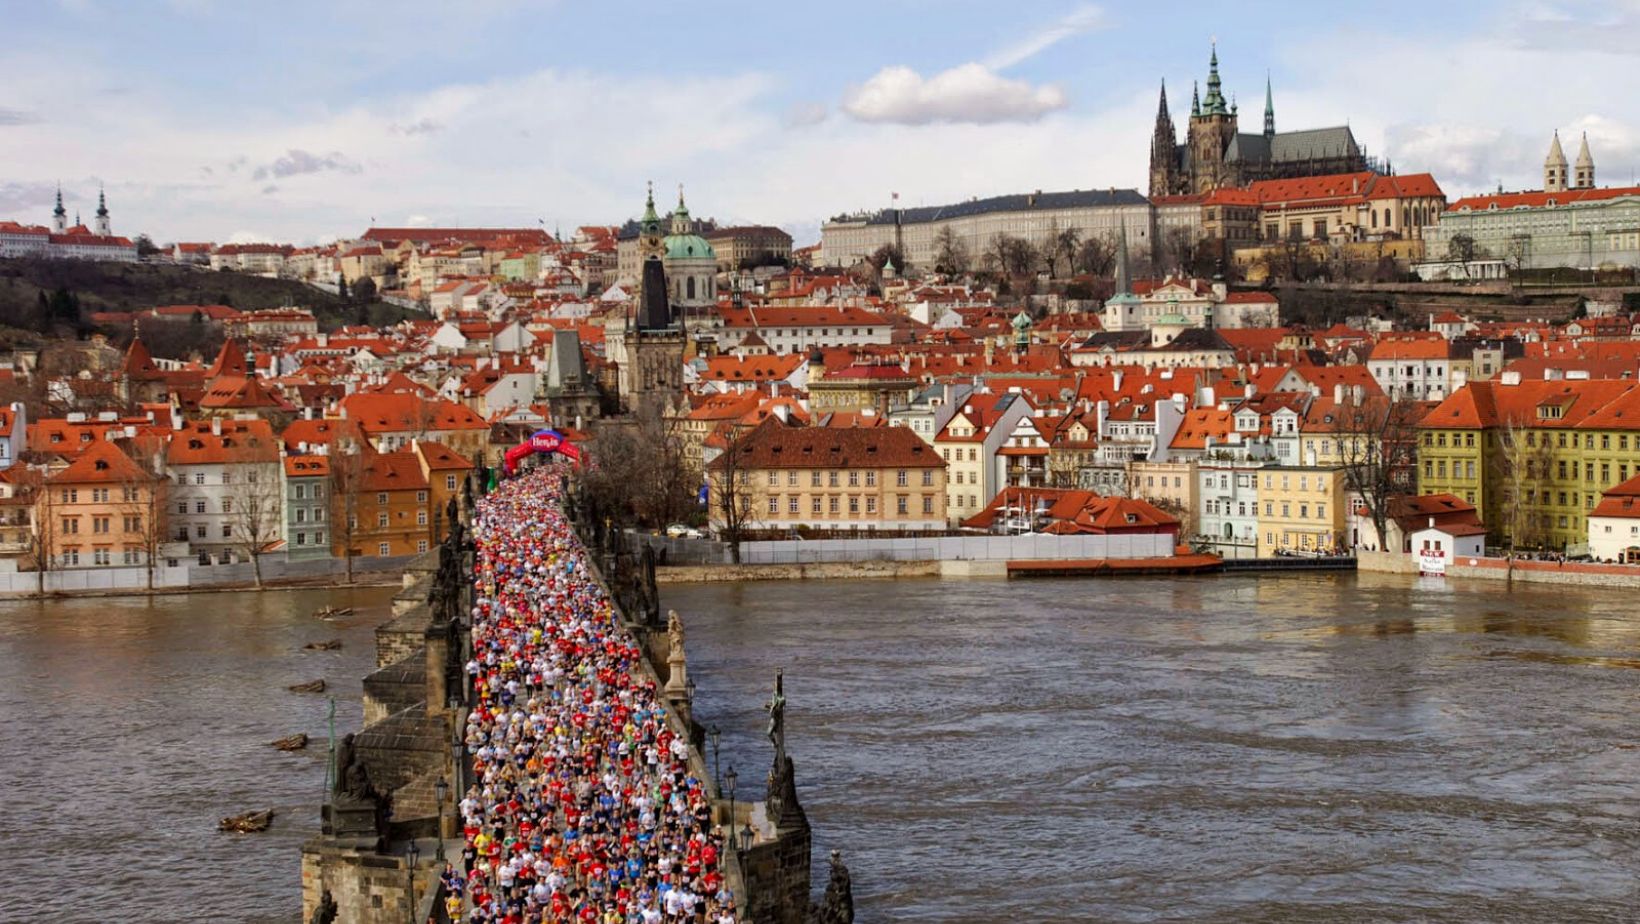 Skvělá zpráva: Pražský mezinárodní maraton startuje z Václavského náměstí!  pražské ráno